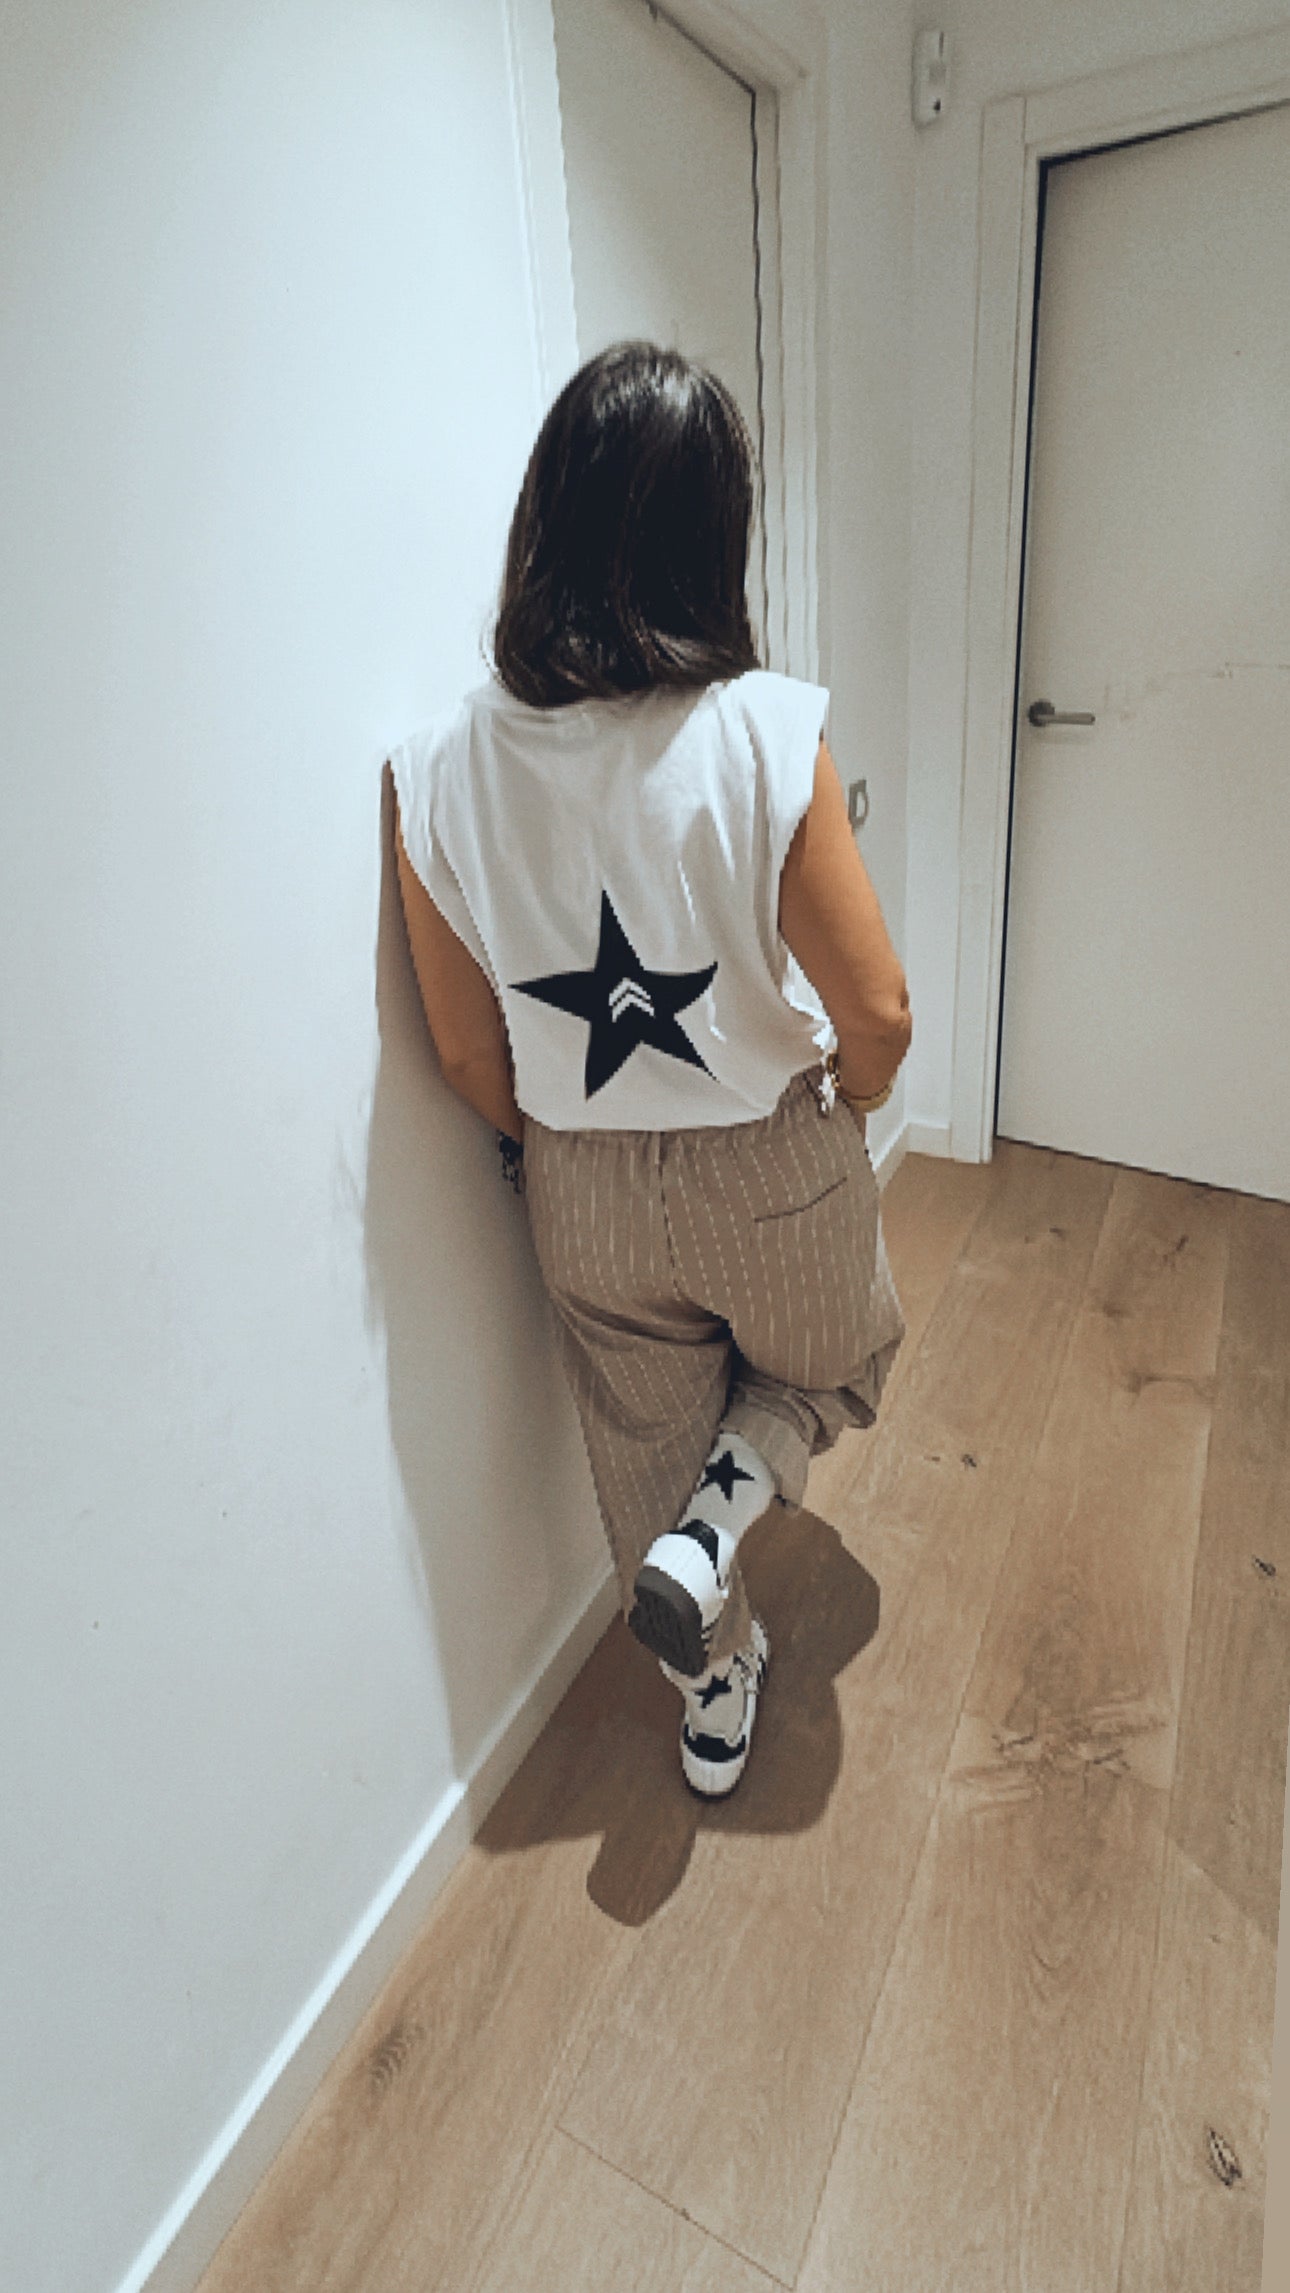 Camiseta “a star is born”